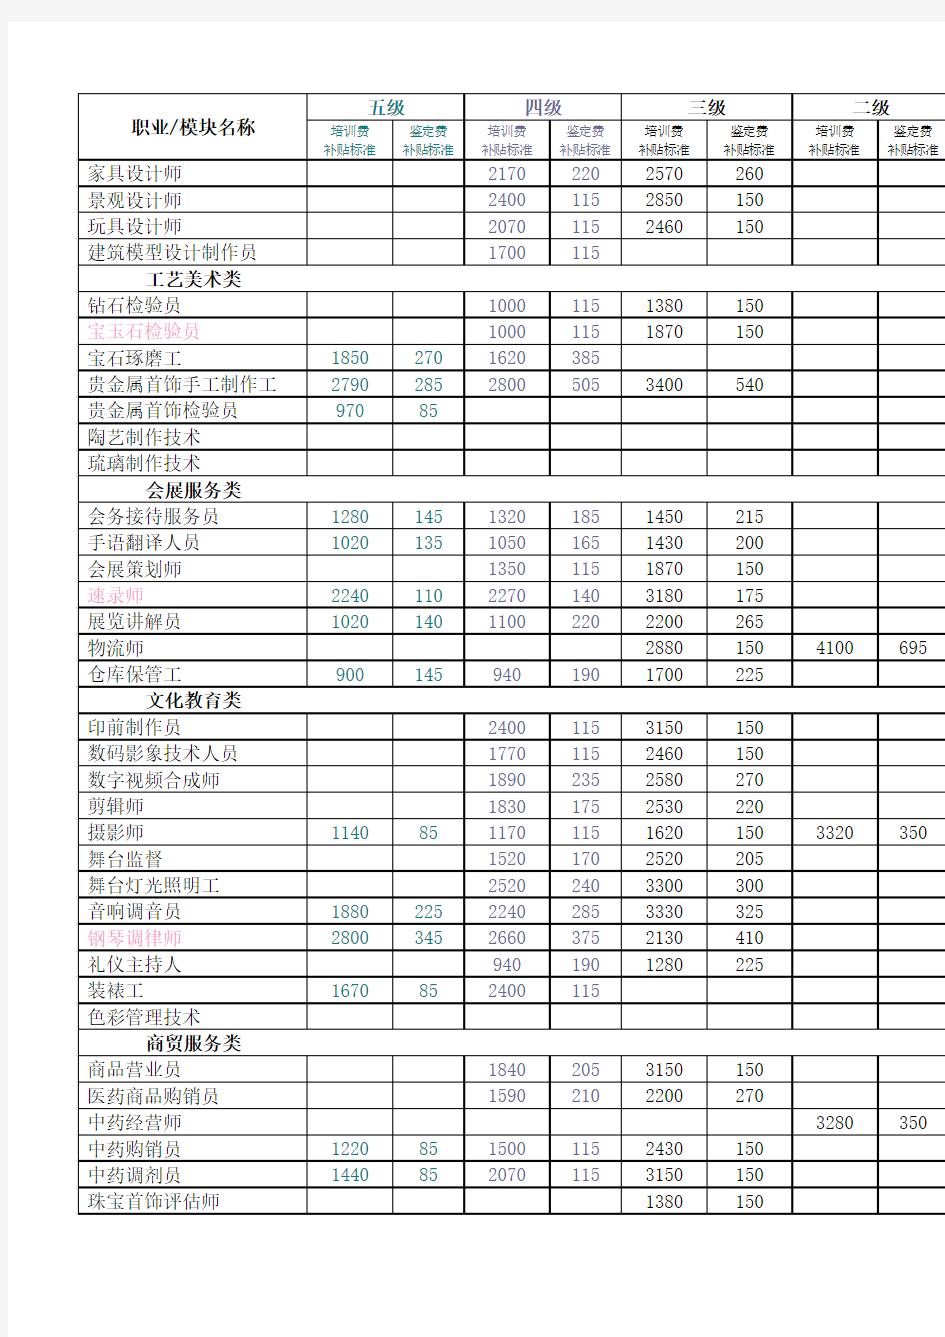 上海政府补贴培训目录内各项目的补贴标准